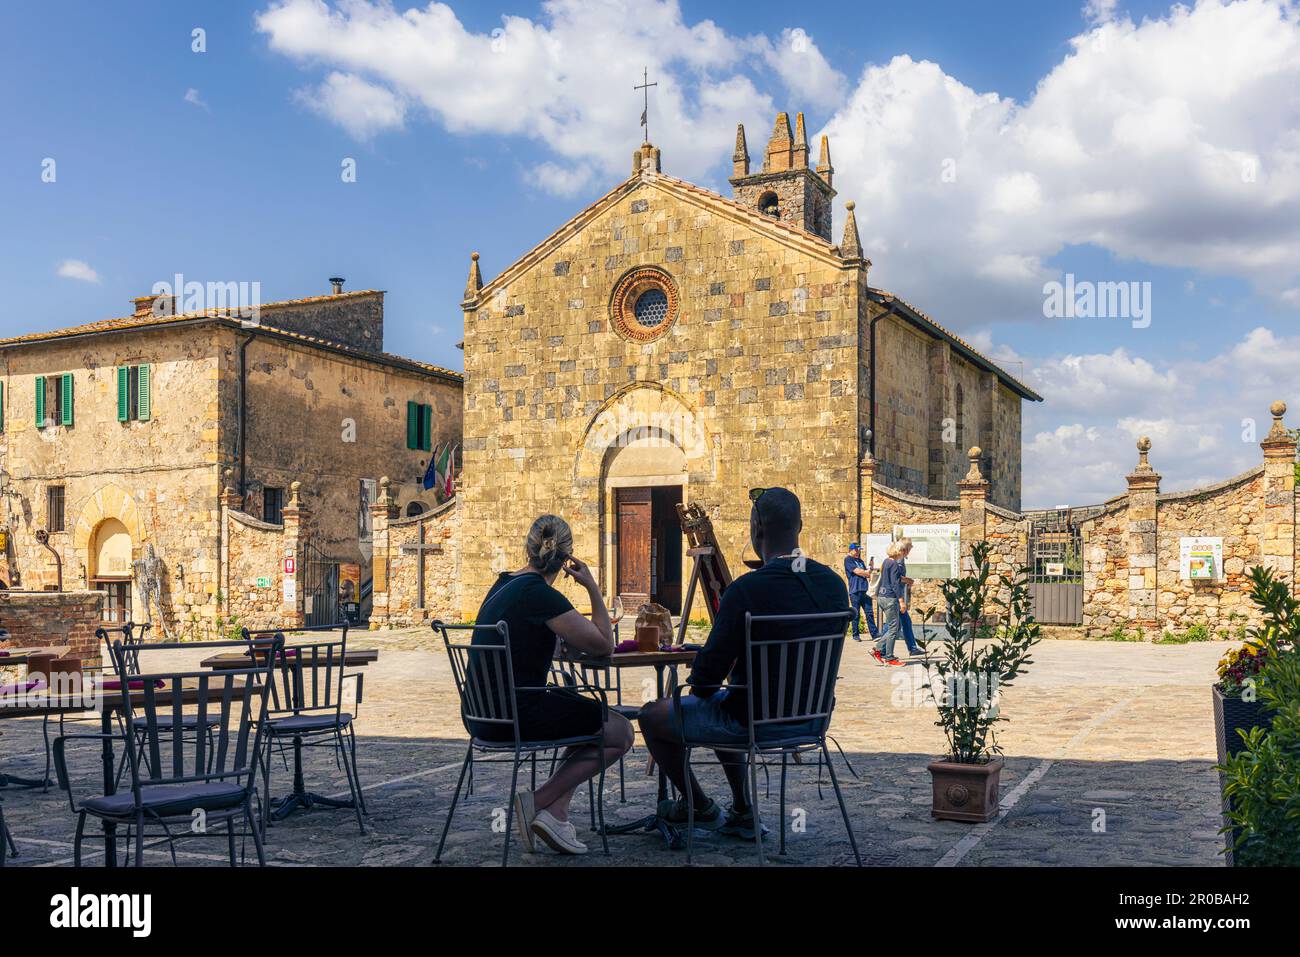 Monteriggioni, province de Sienne, Toscane, Italie. Un couple se régale d'un verre devant l'église romane-gothique de Santa Maria datant du 13th siècle. Banque D'Images